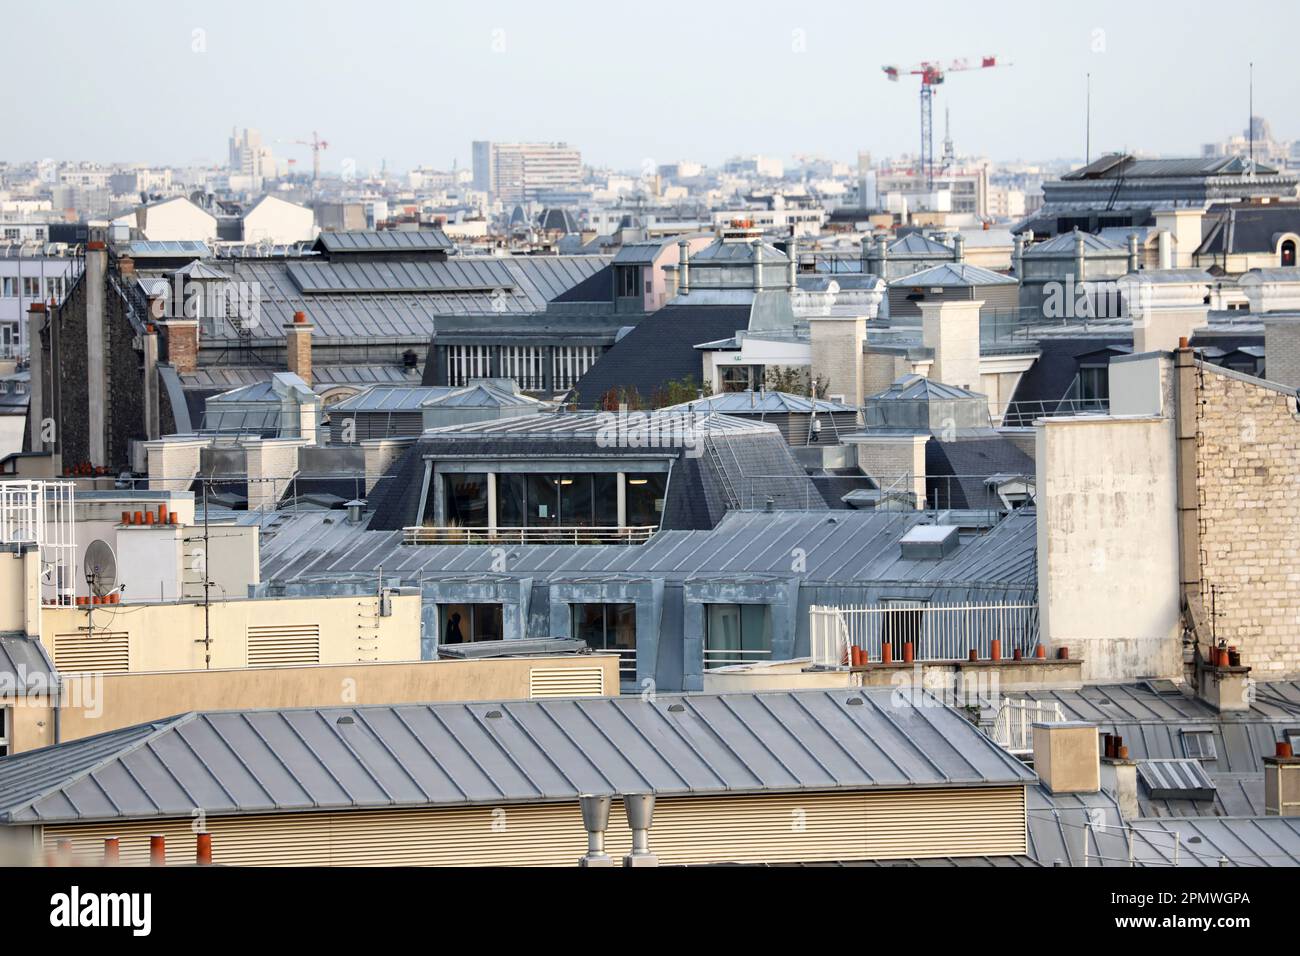 Un'intrigante foto aerea del fascino unico dei tetti metallici, che mostra il fascino architettonico distintivo di Parigi, Francia Foto Stock